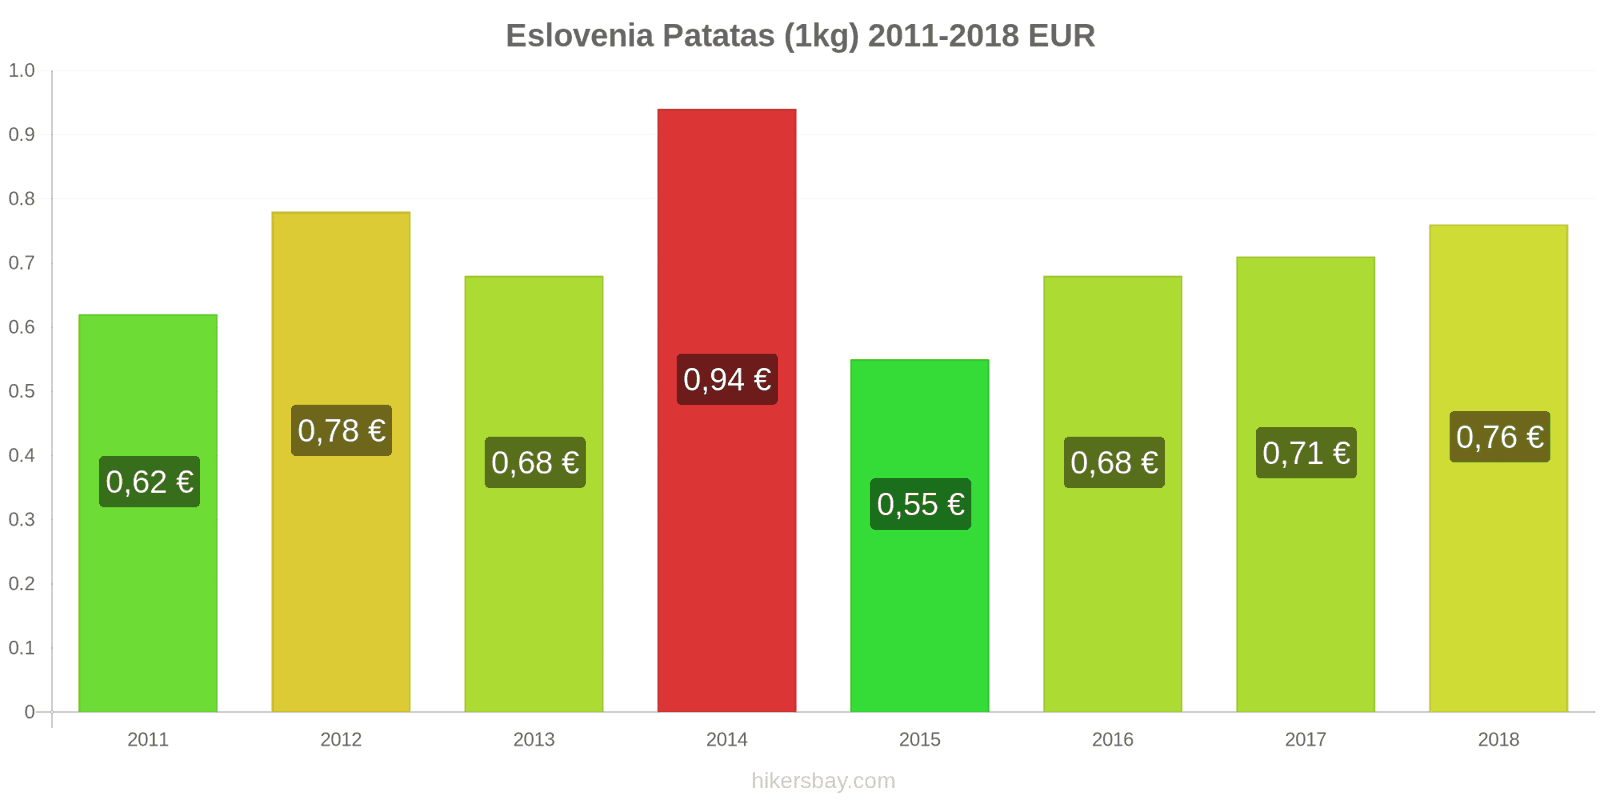 Eslovenia cambios de precios Patatas (1kg) hikersbay.com